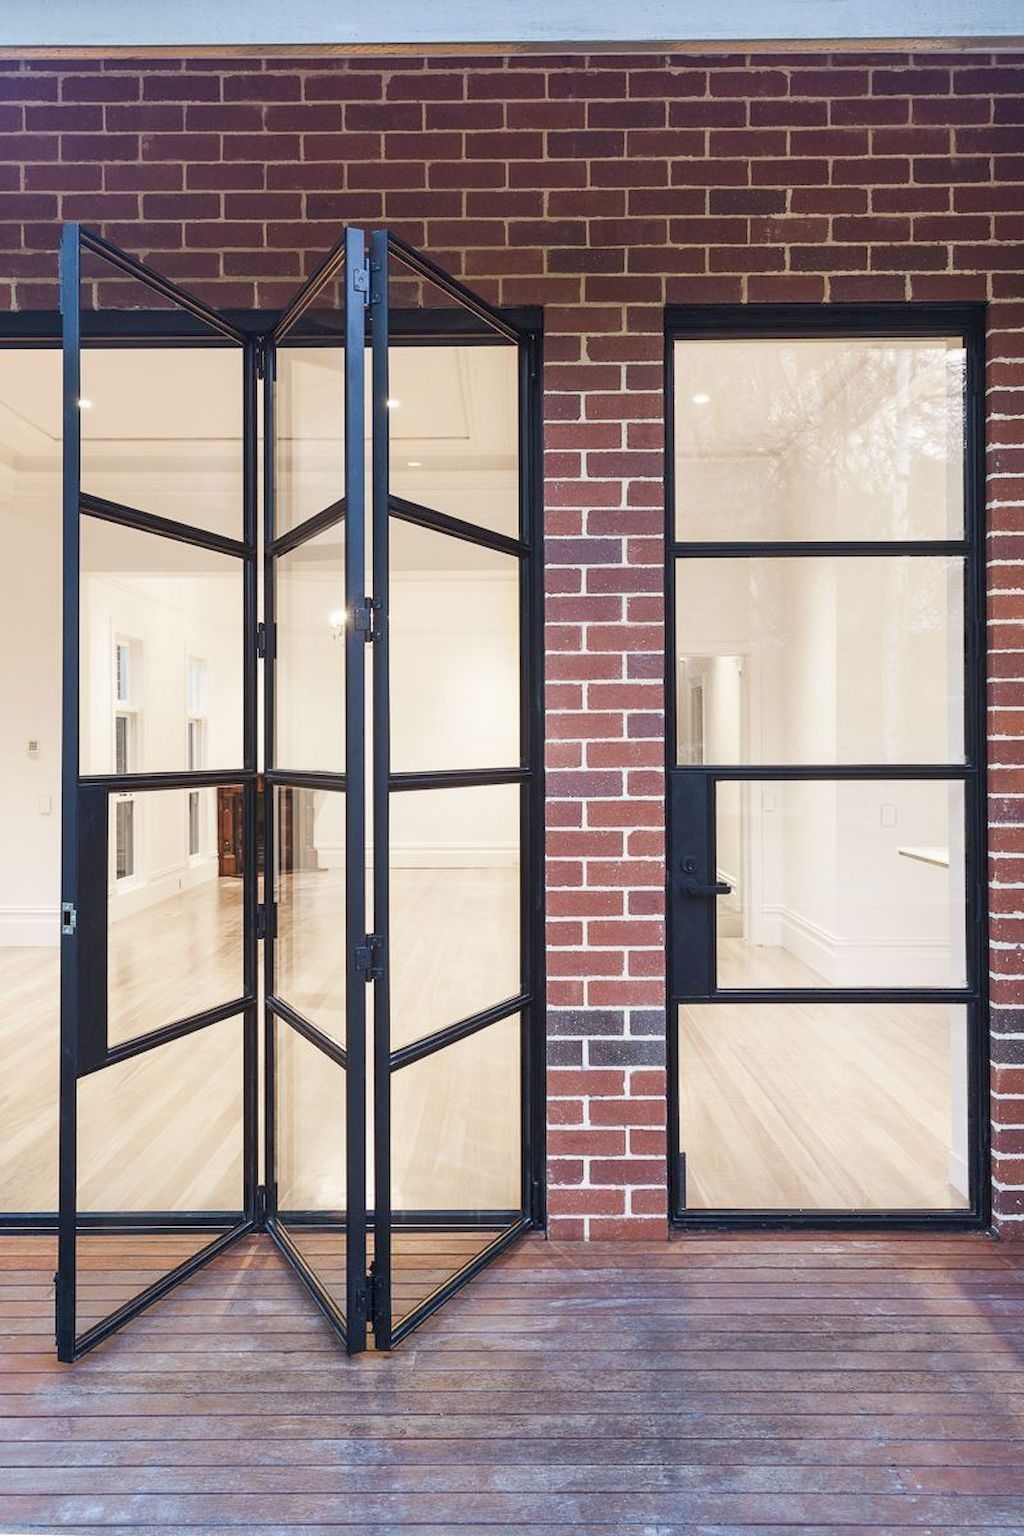 85+ Amazing Window Exterior Design Ideas For Your Home | ARA HOME